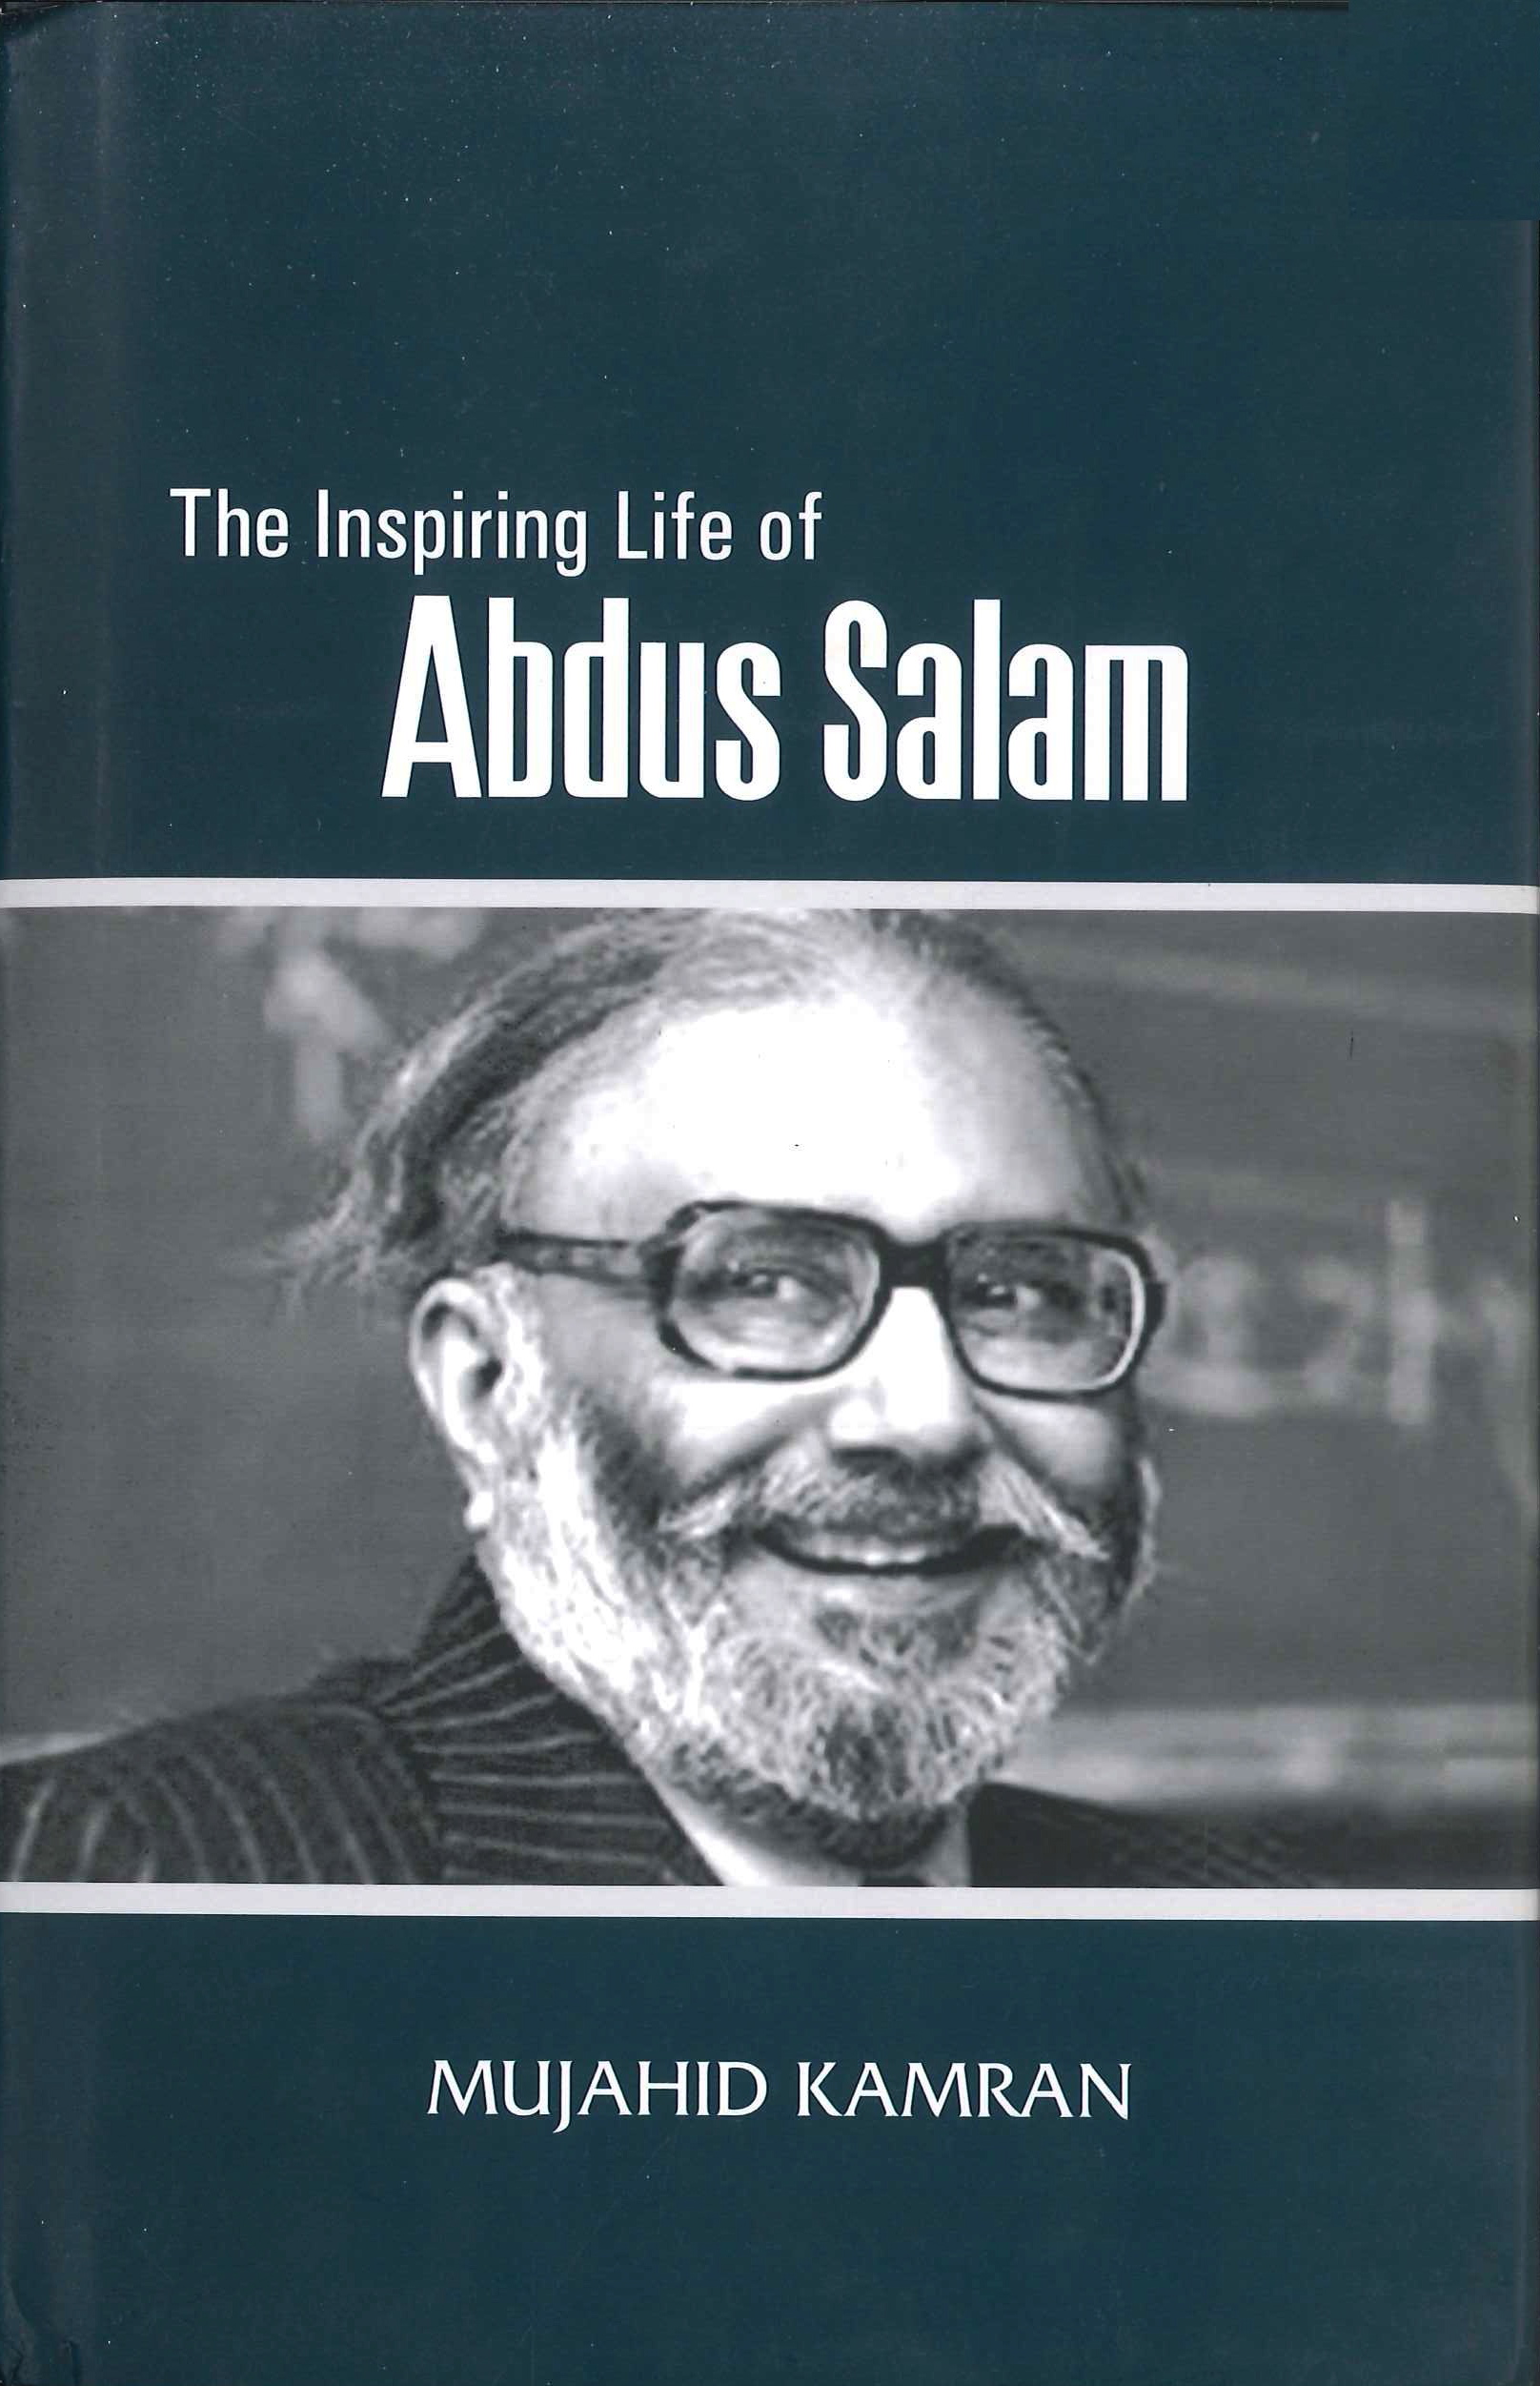 The inspiring life of Abdus Salam